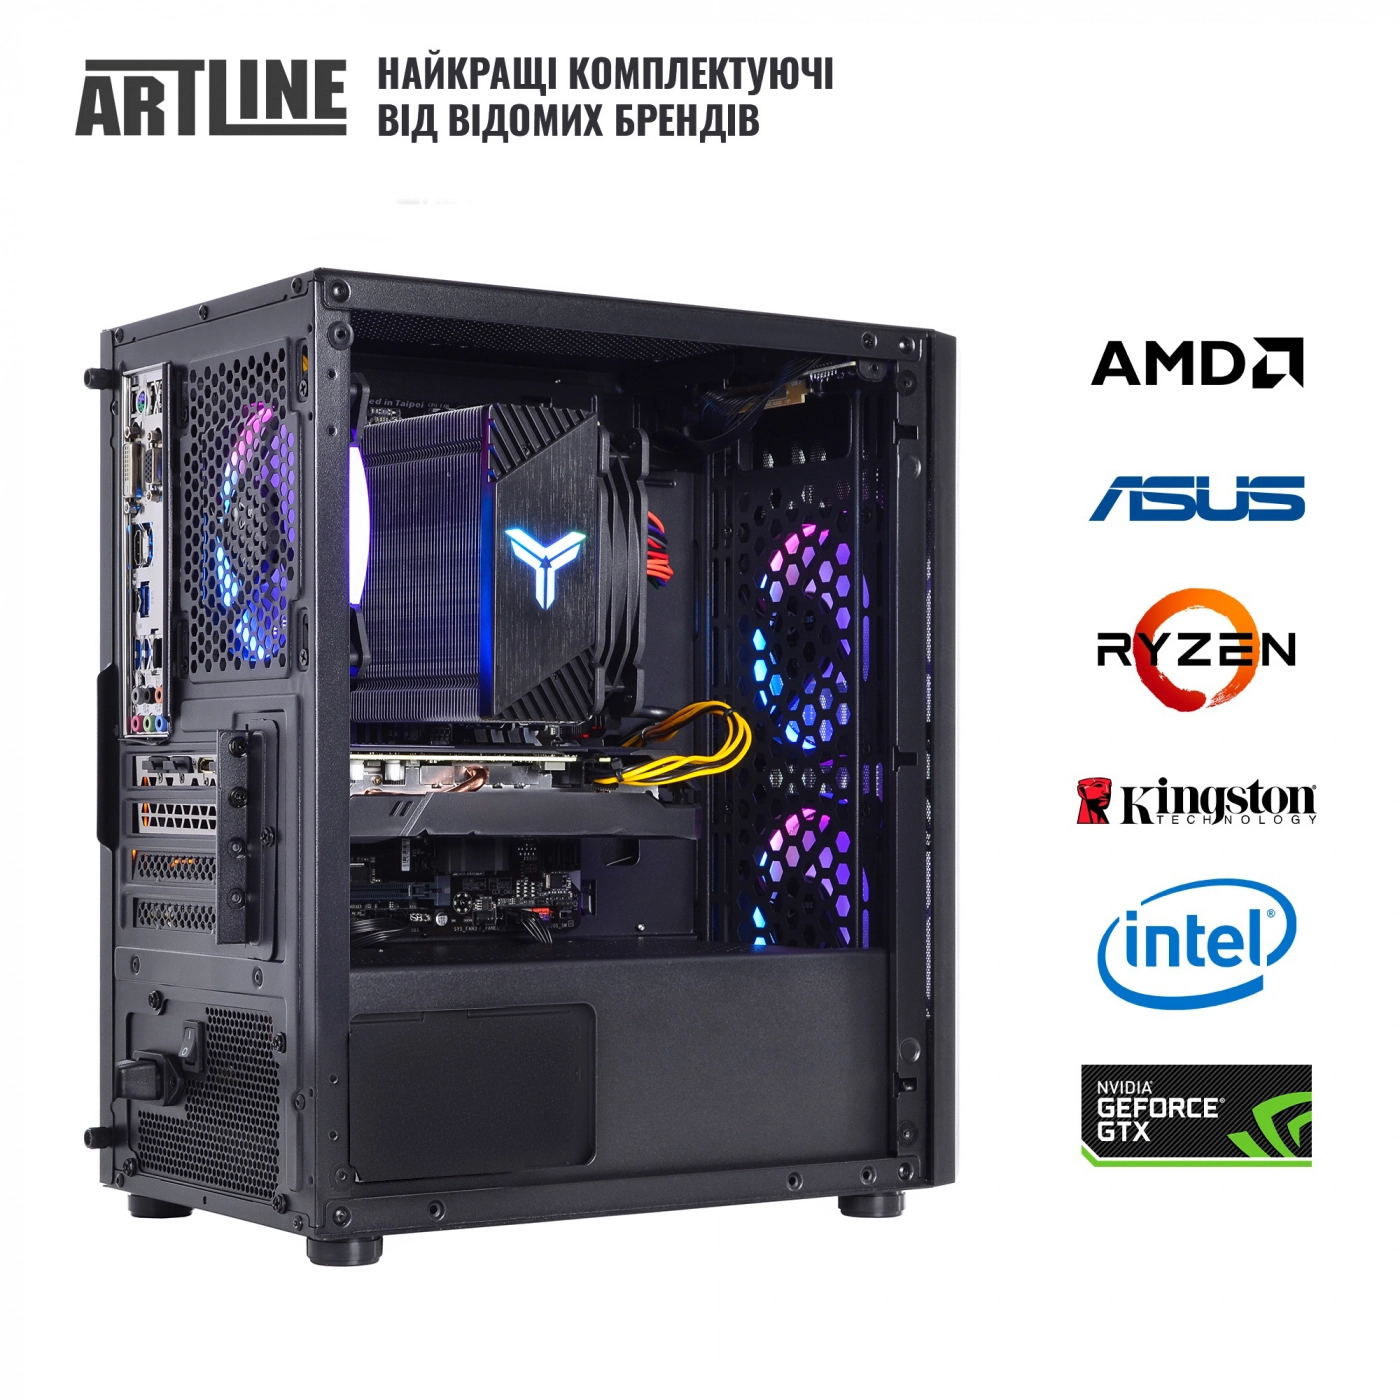 Купить Компьютер ARTLINE Gaming X71v42 - фото 7